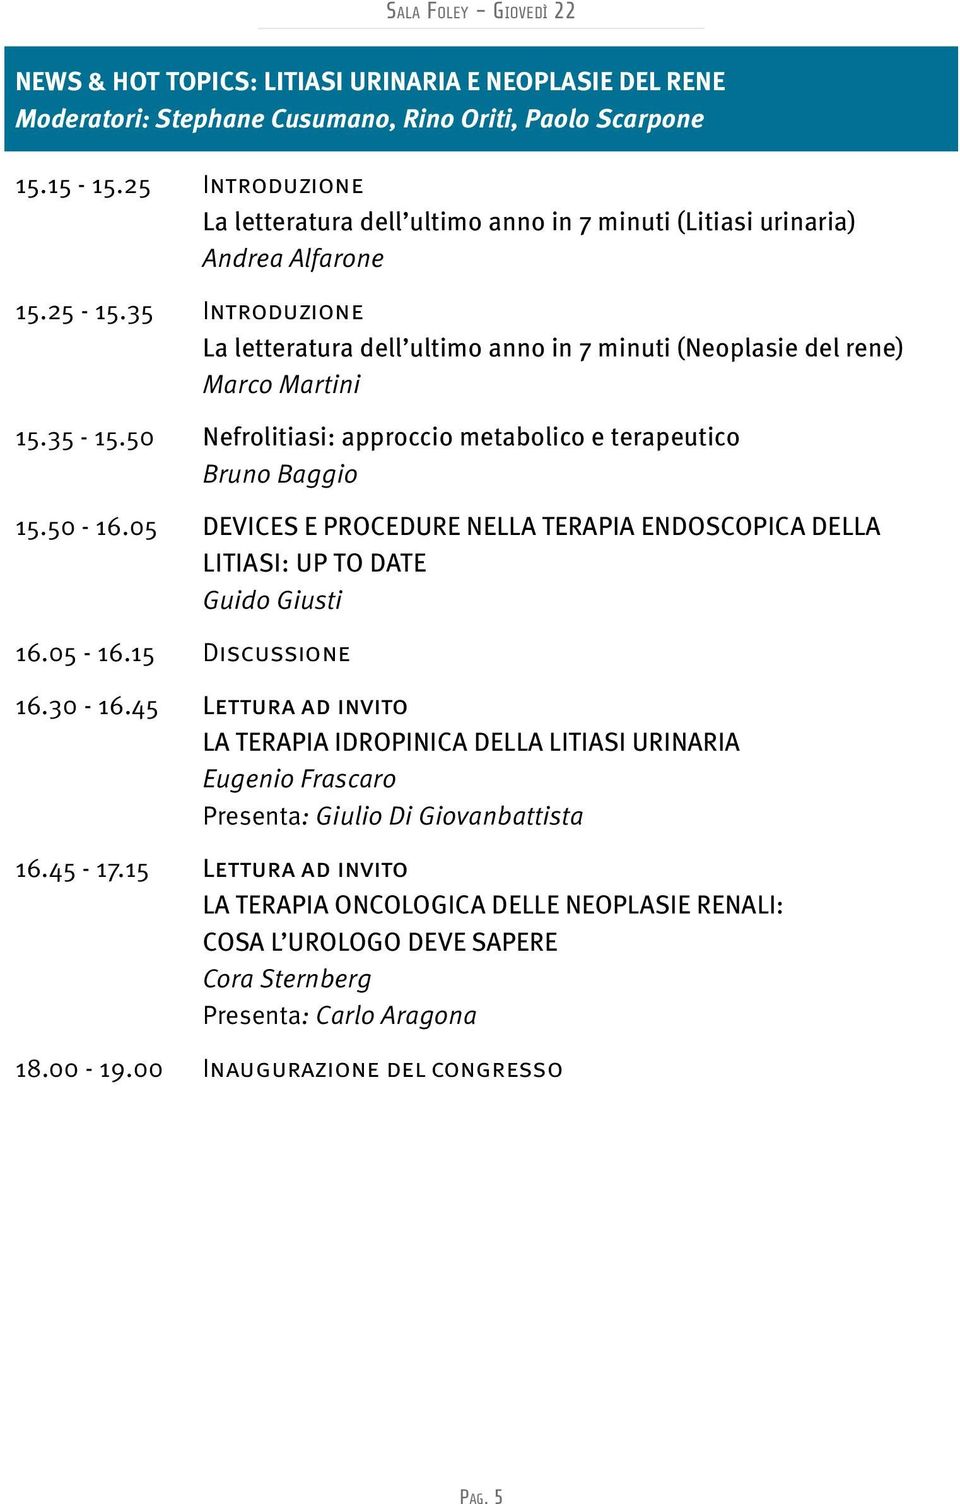 35 Introduzione La letteratura dell ultimo anno in 7 minuti (Neoplasie del rene) Marco Martini 15.35-15.50 Nefrolitiasi: approccio metabolico e terapeutico Bruno Baggio 15.50-16.